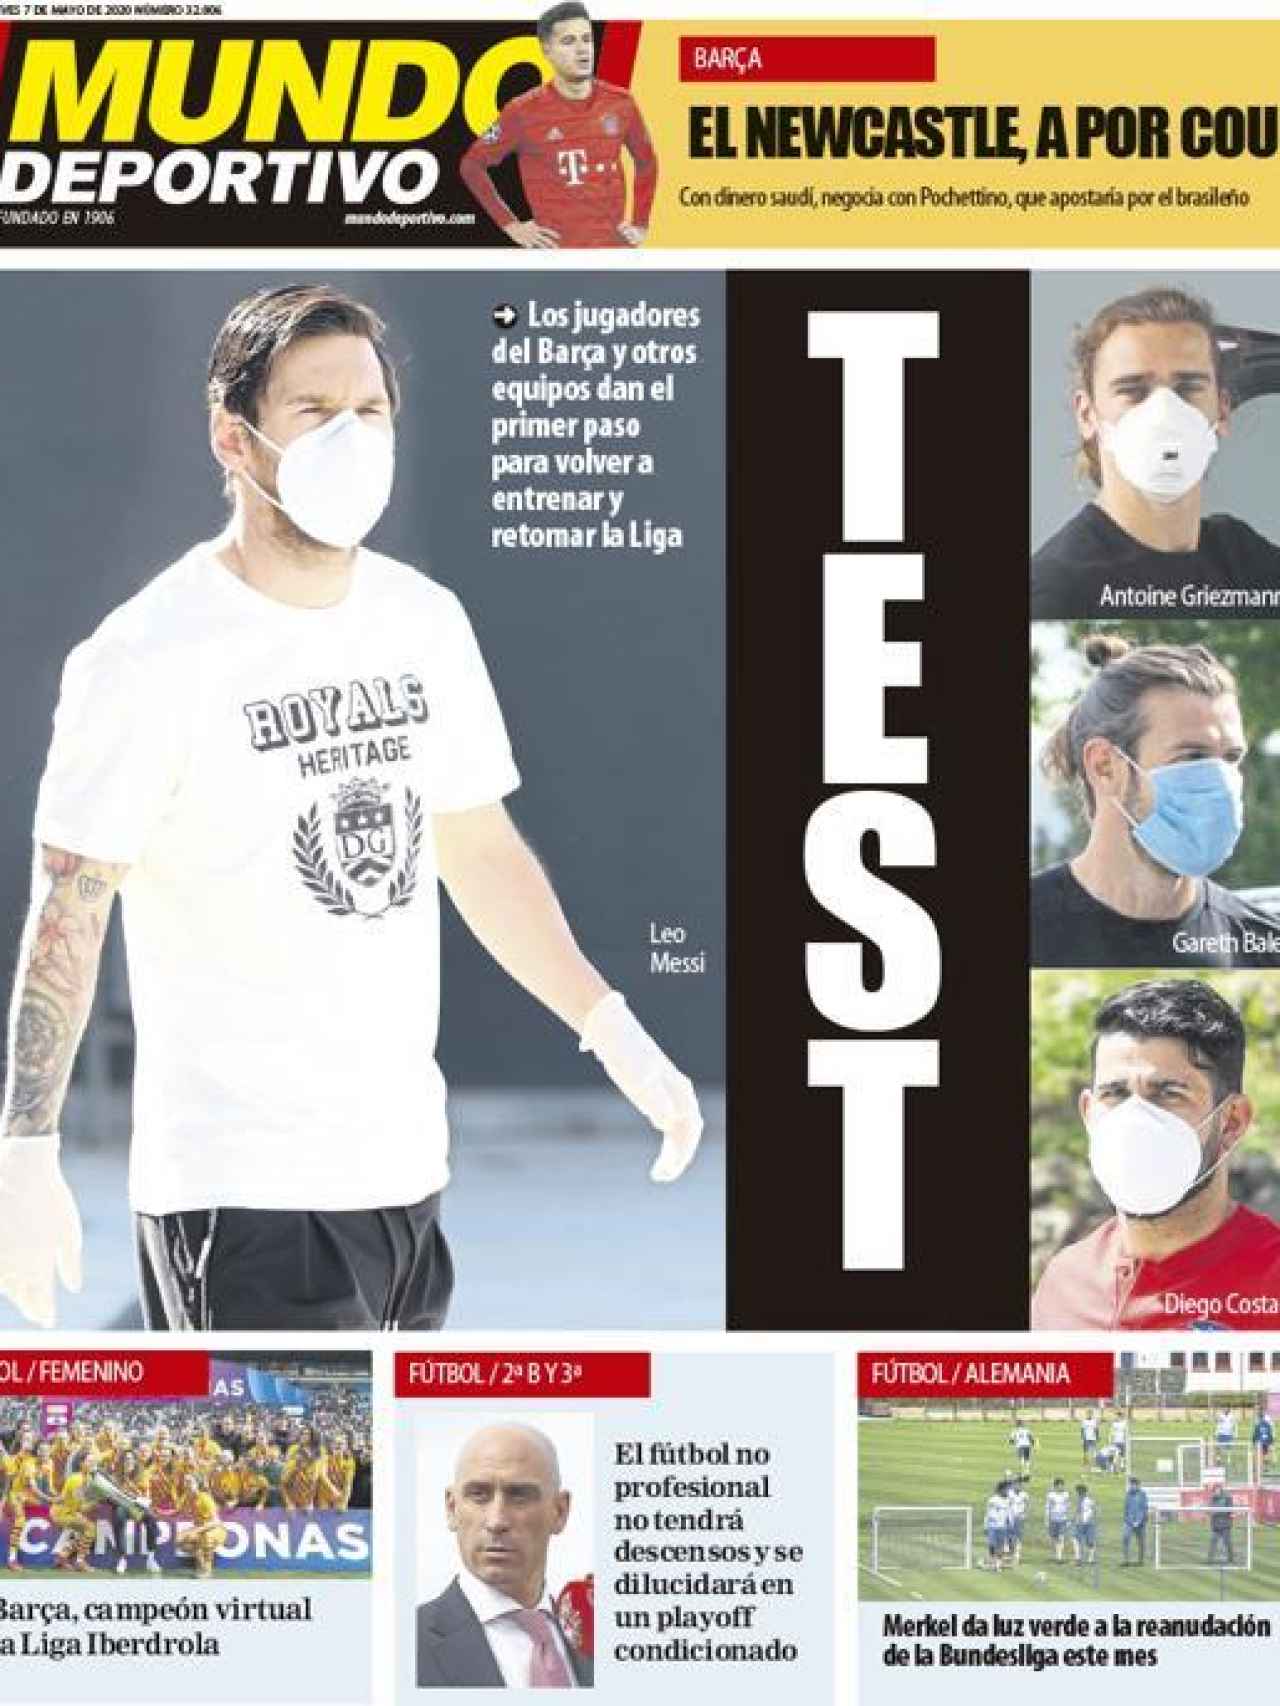 La portada del diario Mundo Deportivo (07/05/2020)